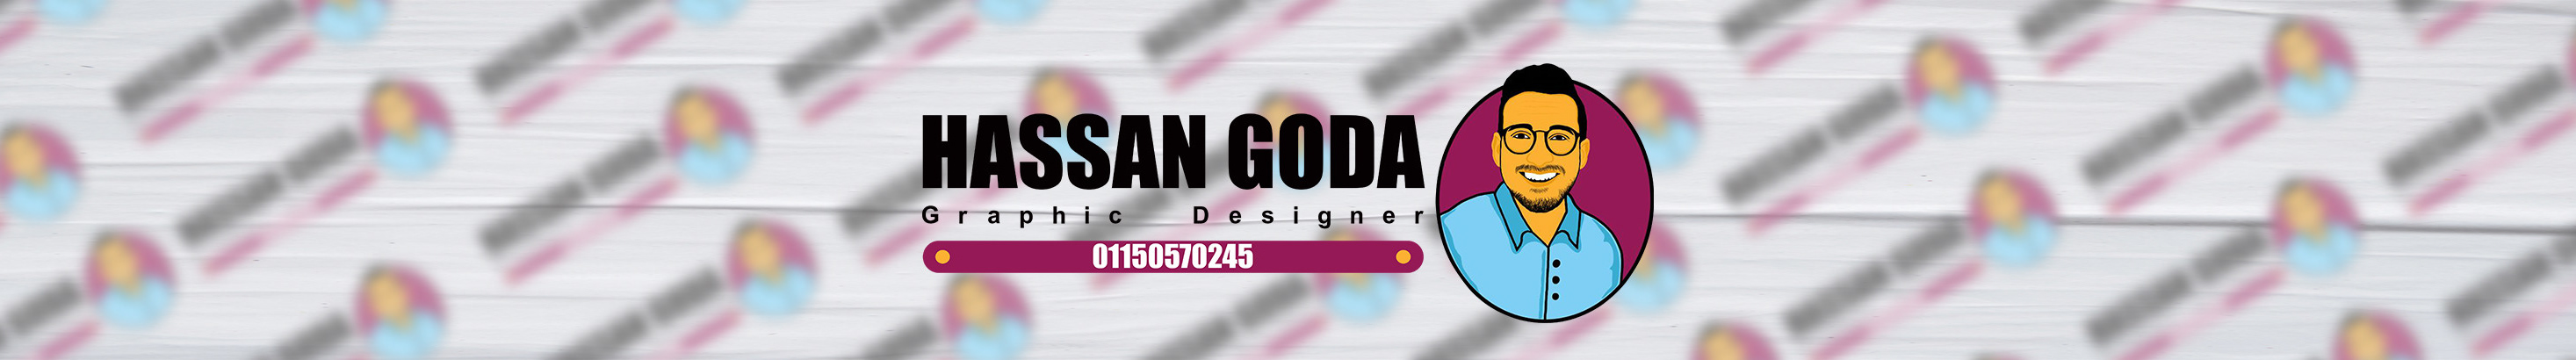 Profil-Banner von hassan goda